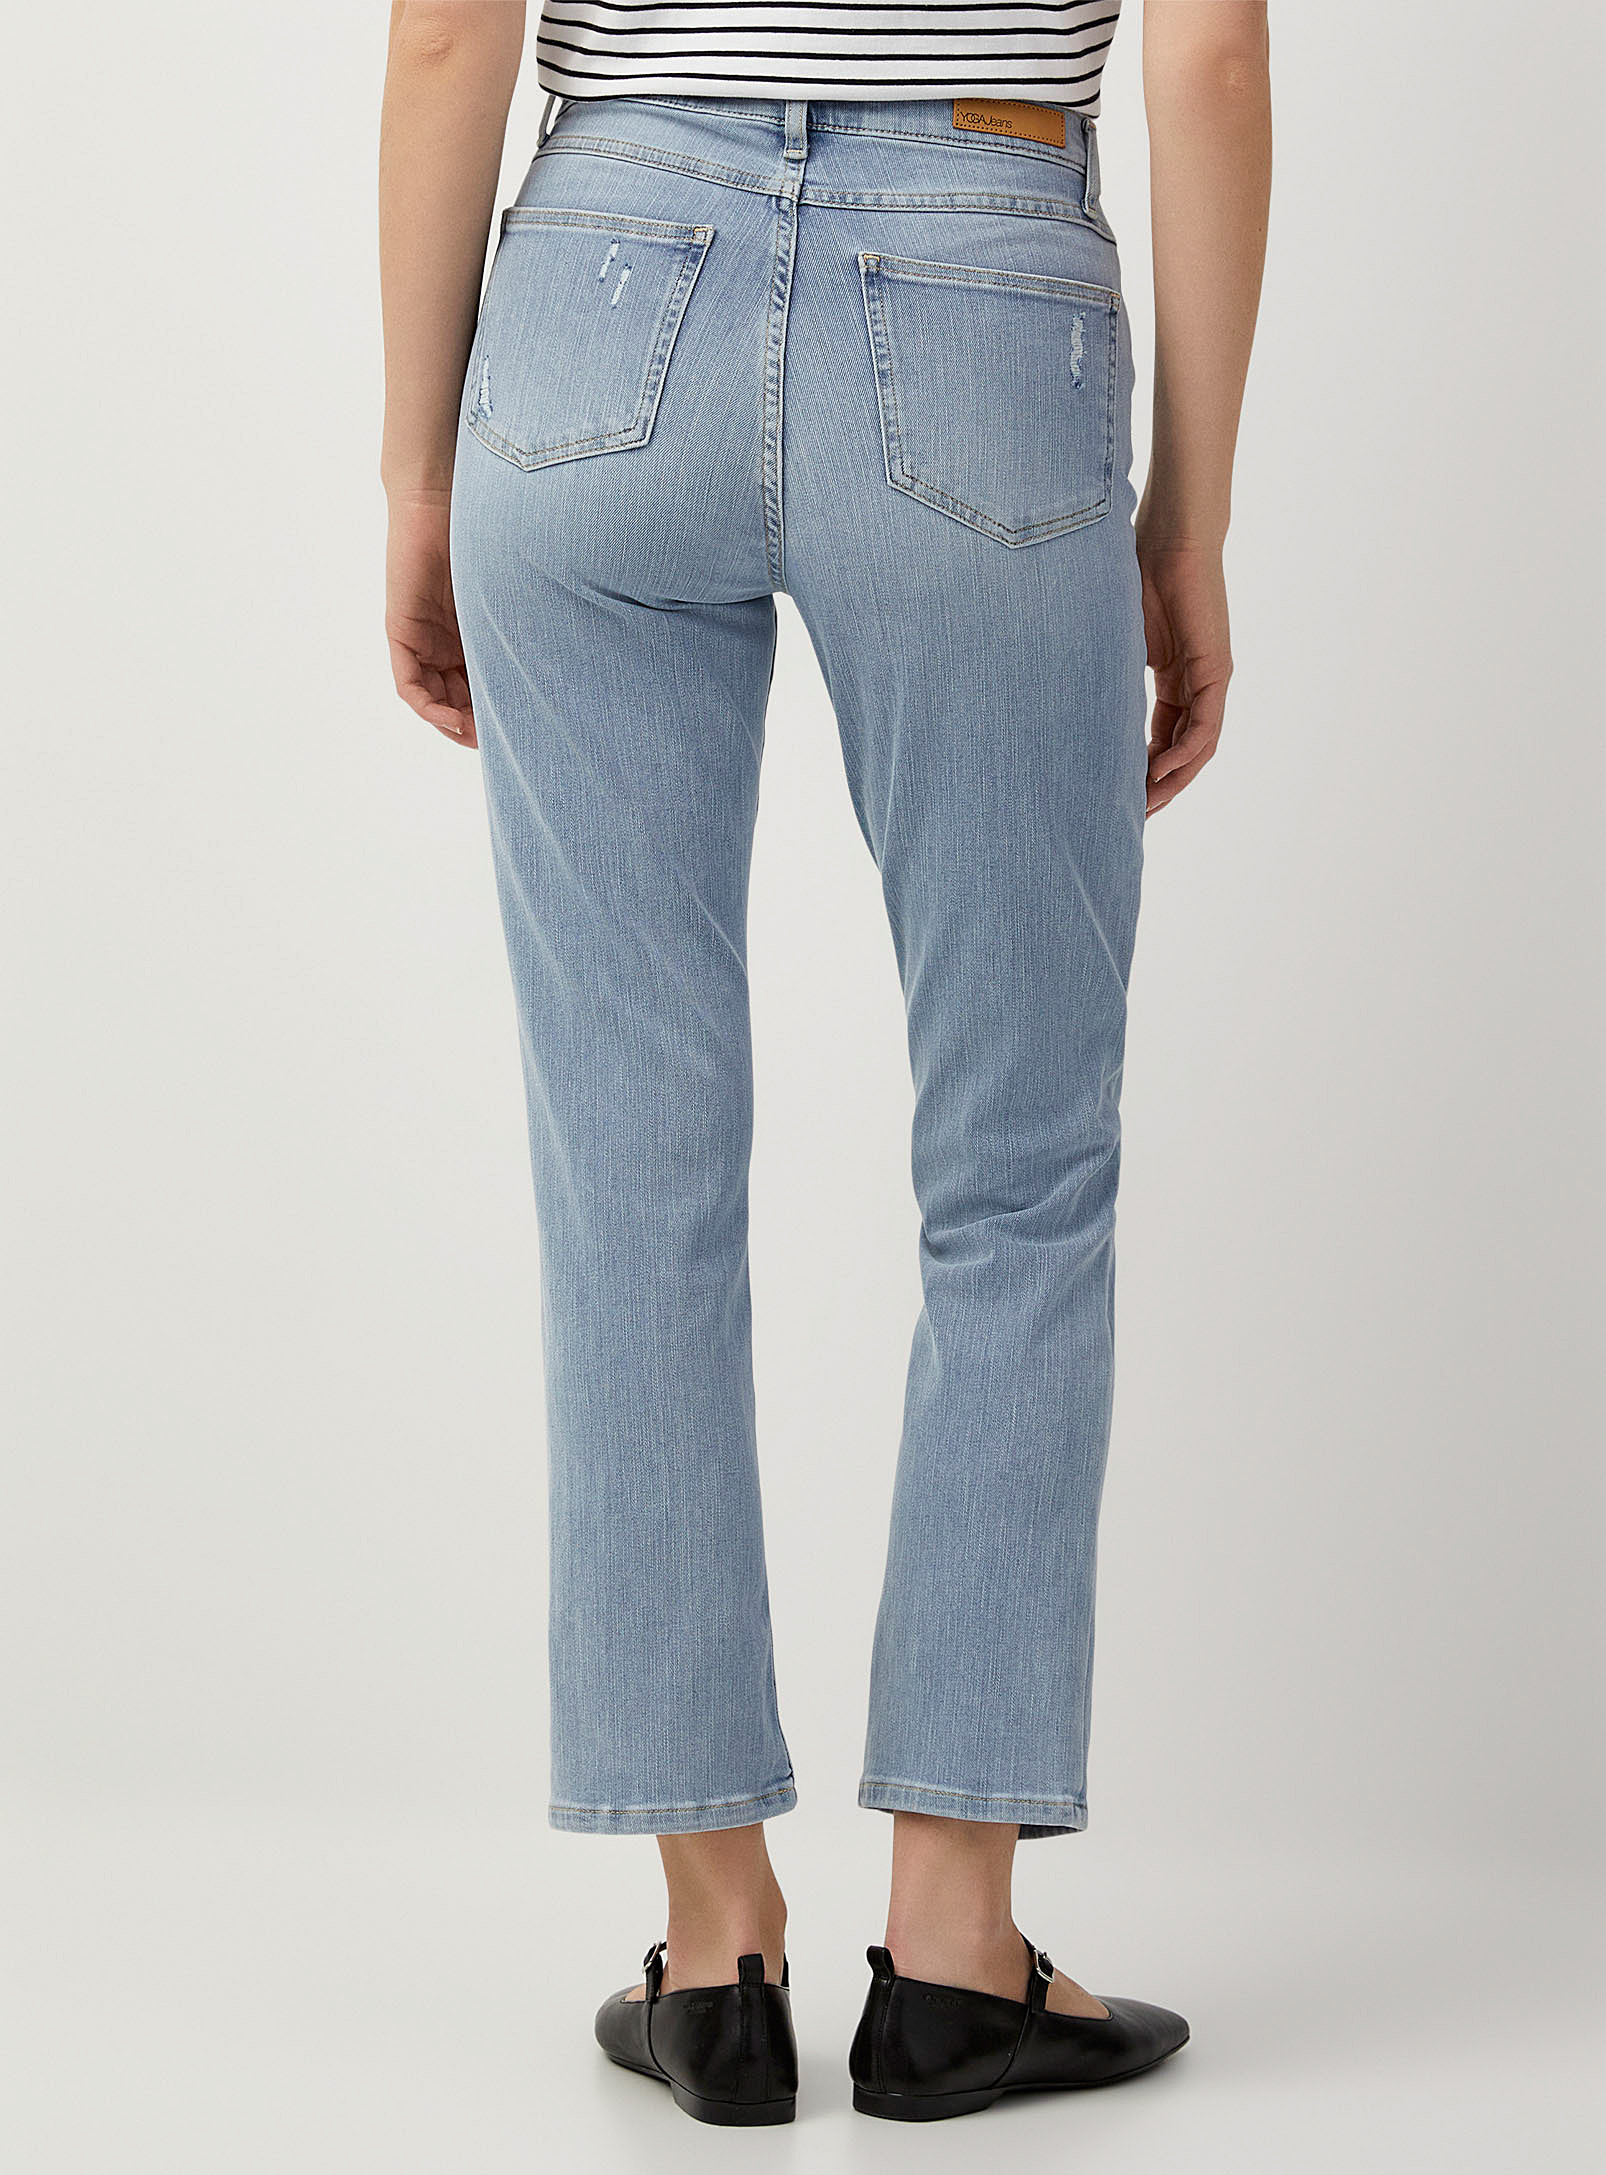 Yoga Jeans - Le jean étroit Emily bleu pâle